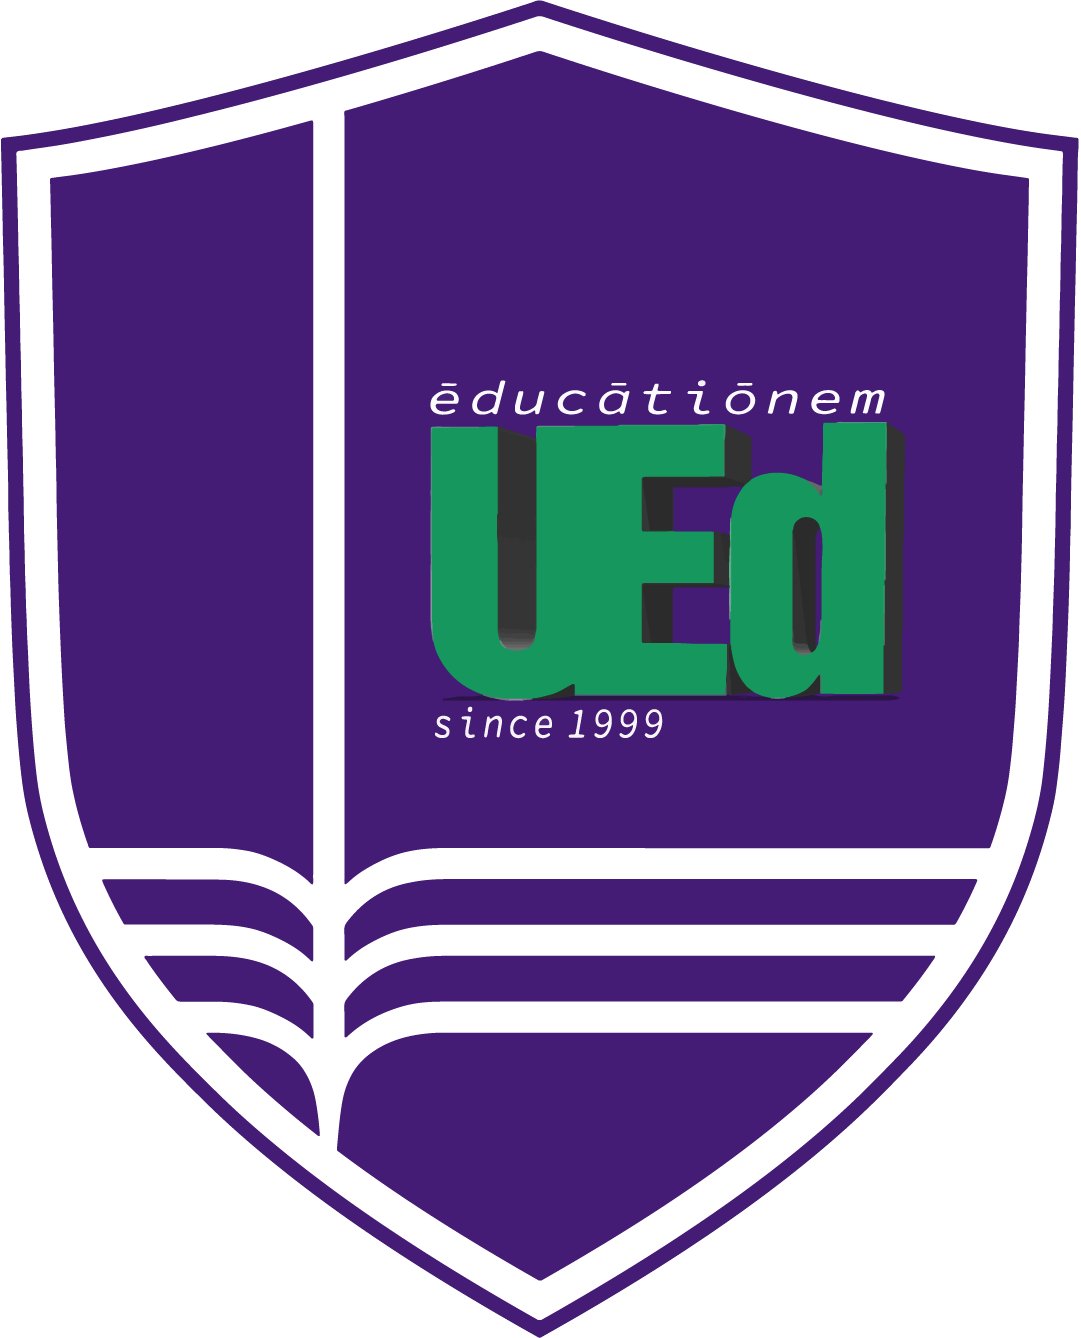 Thiết kế logo đại học giáo dục độc đáo và chuyên nghiệp